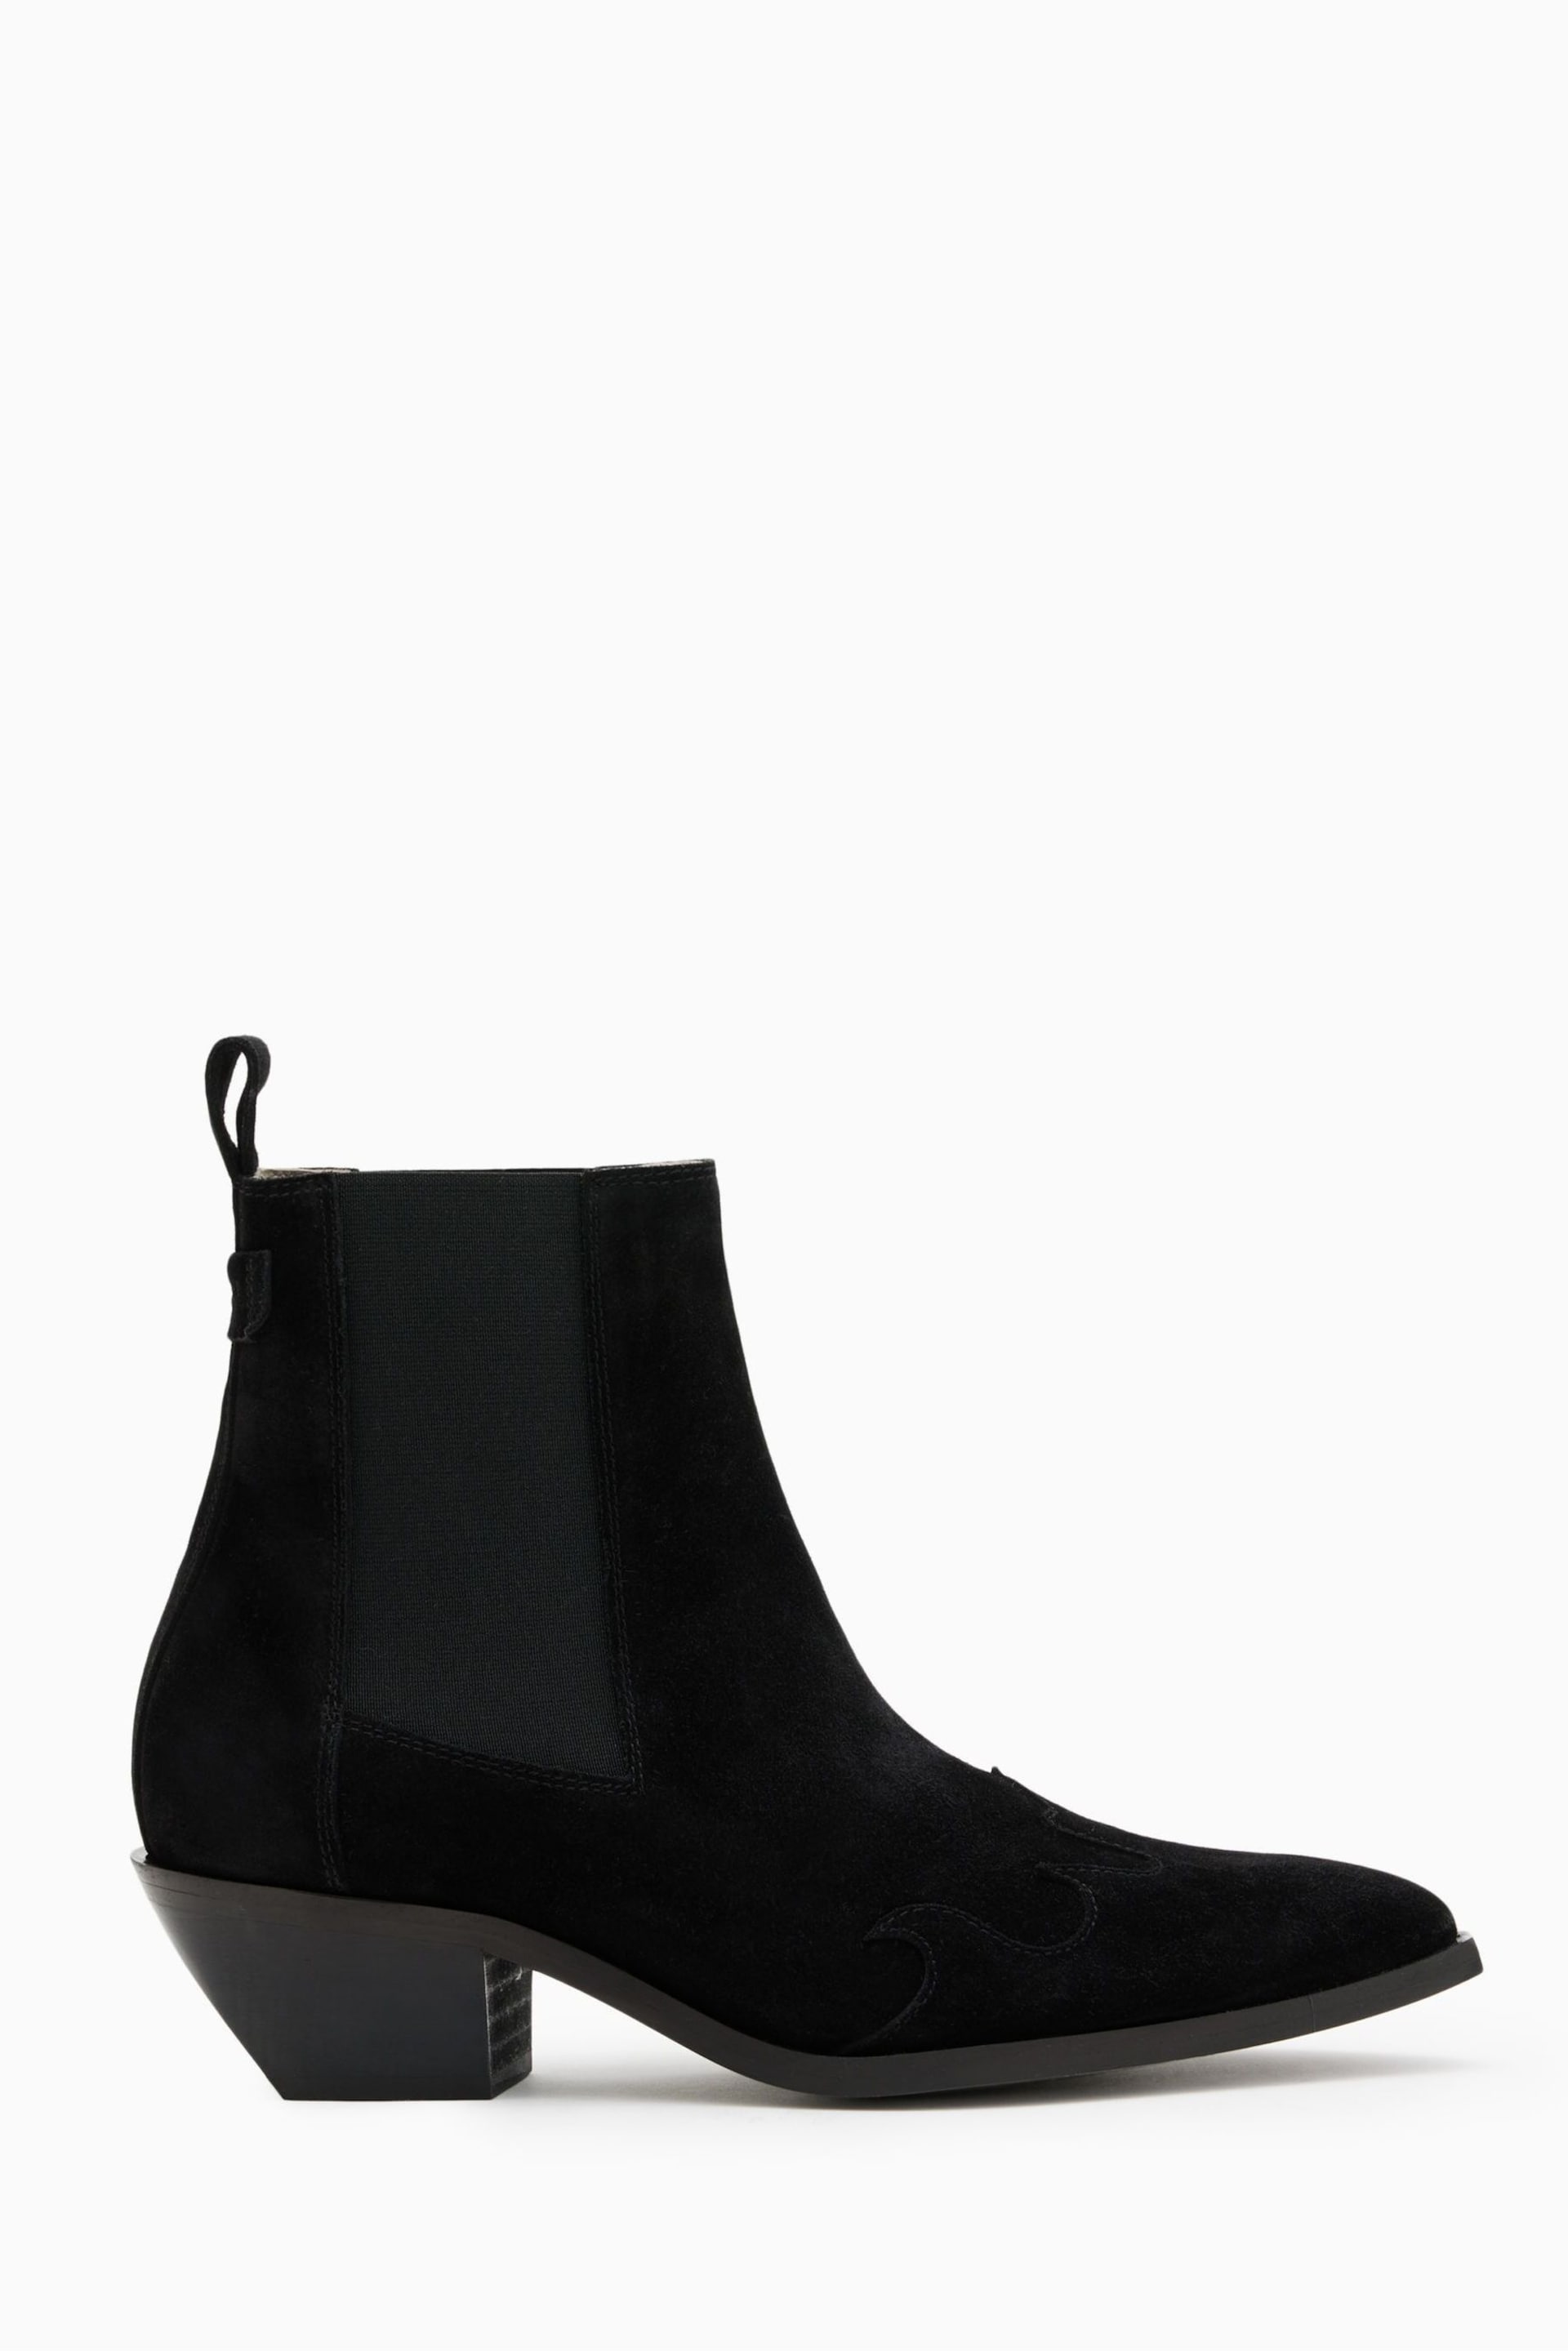 AllSaints Black Dellaware Suede Boots - Image 1 of 5